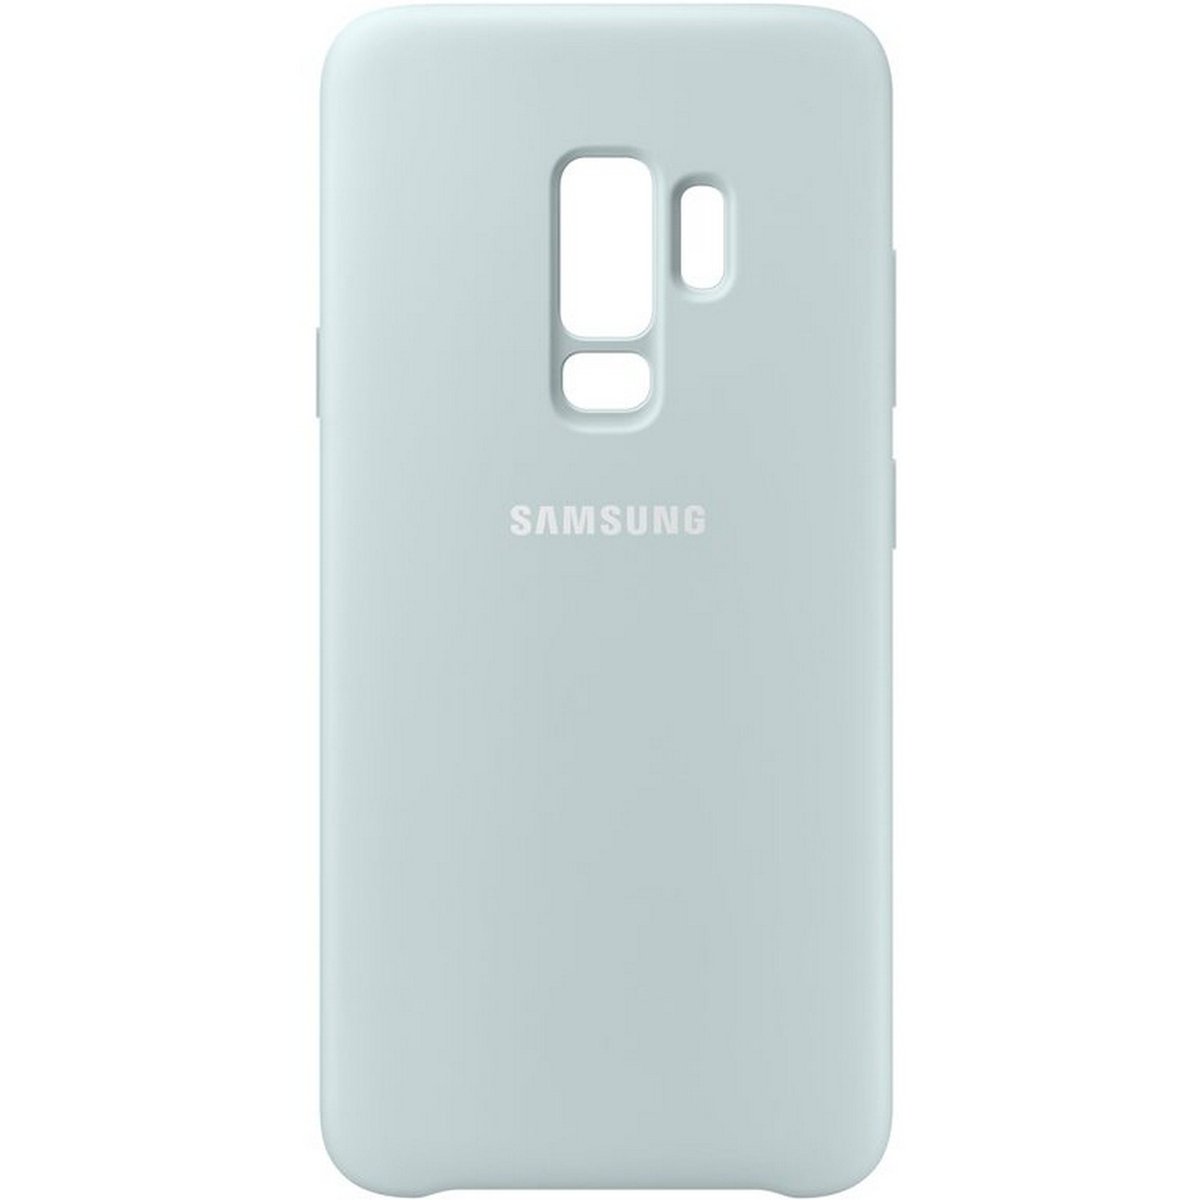 Samsung Galaxy S9+ Silicone Cover Blue EF-PG965TLEGWW